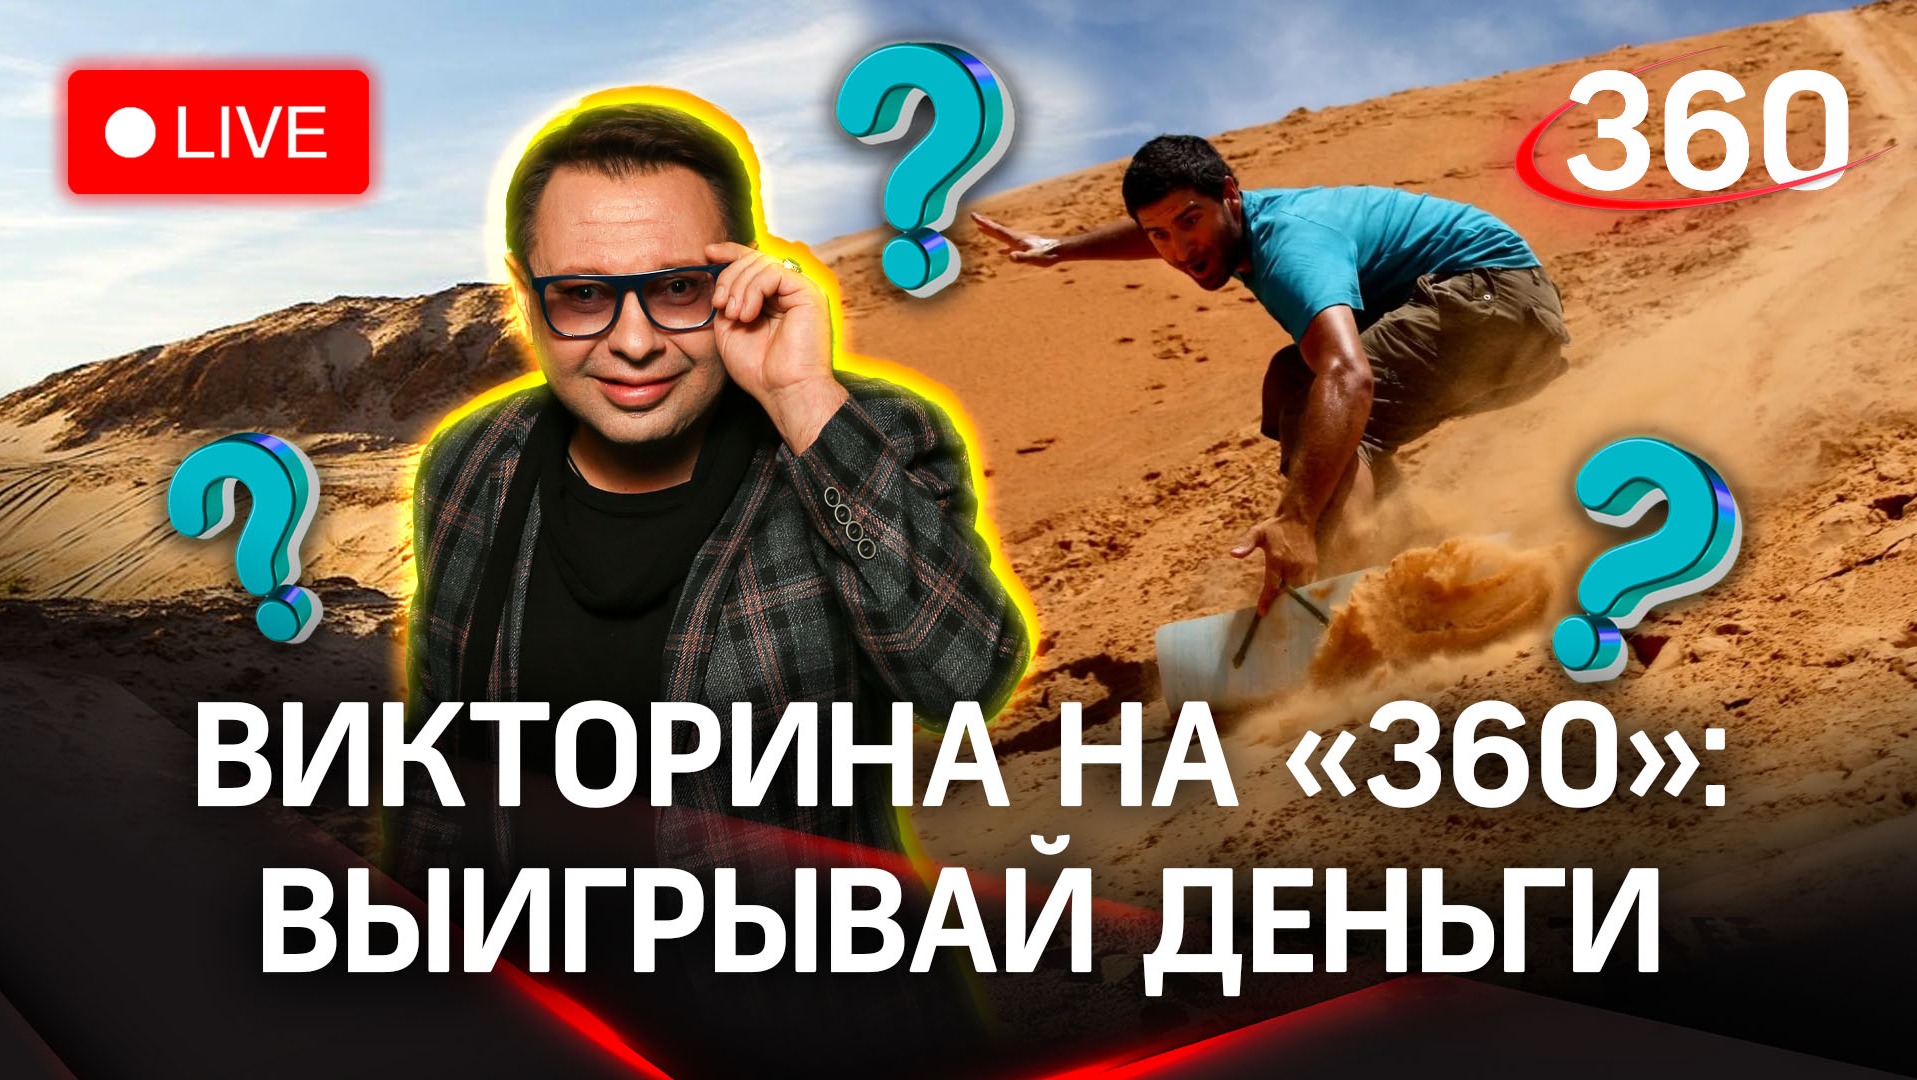 Отвечай и выигрывай деньги! Викторина на «360»: песчаные дюны в Сычево 